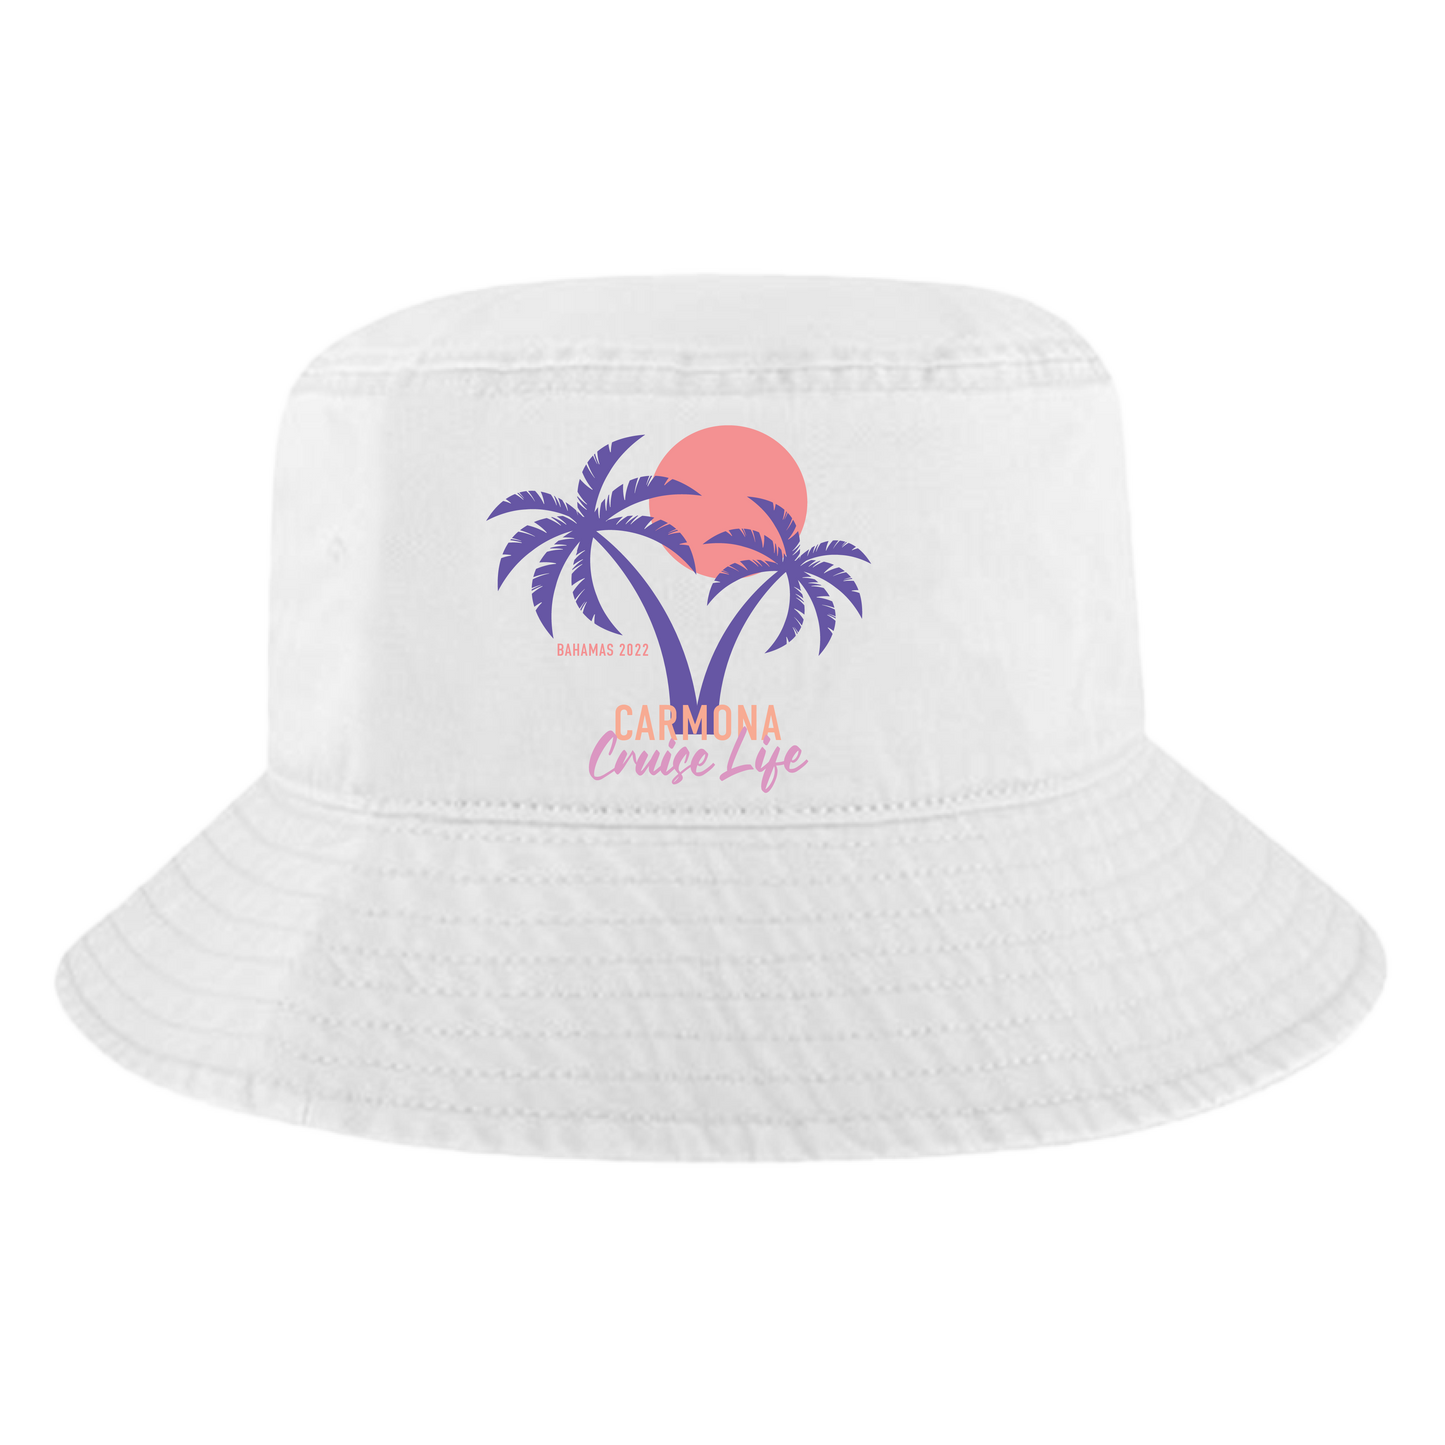 Cruise Life - Unisex Personalized Bucket Hat